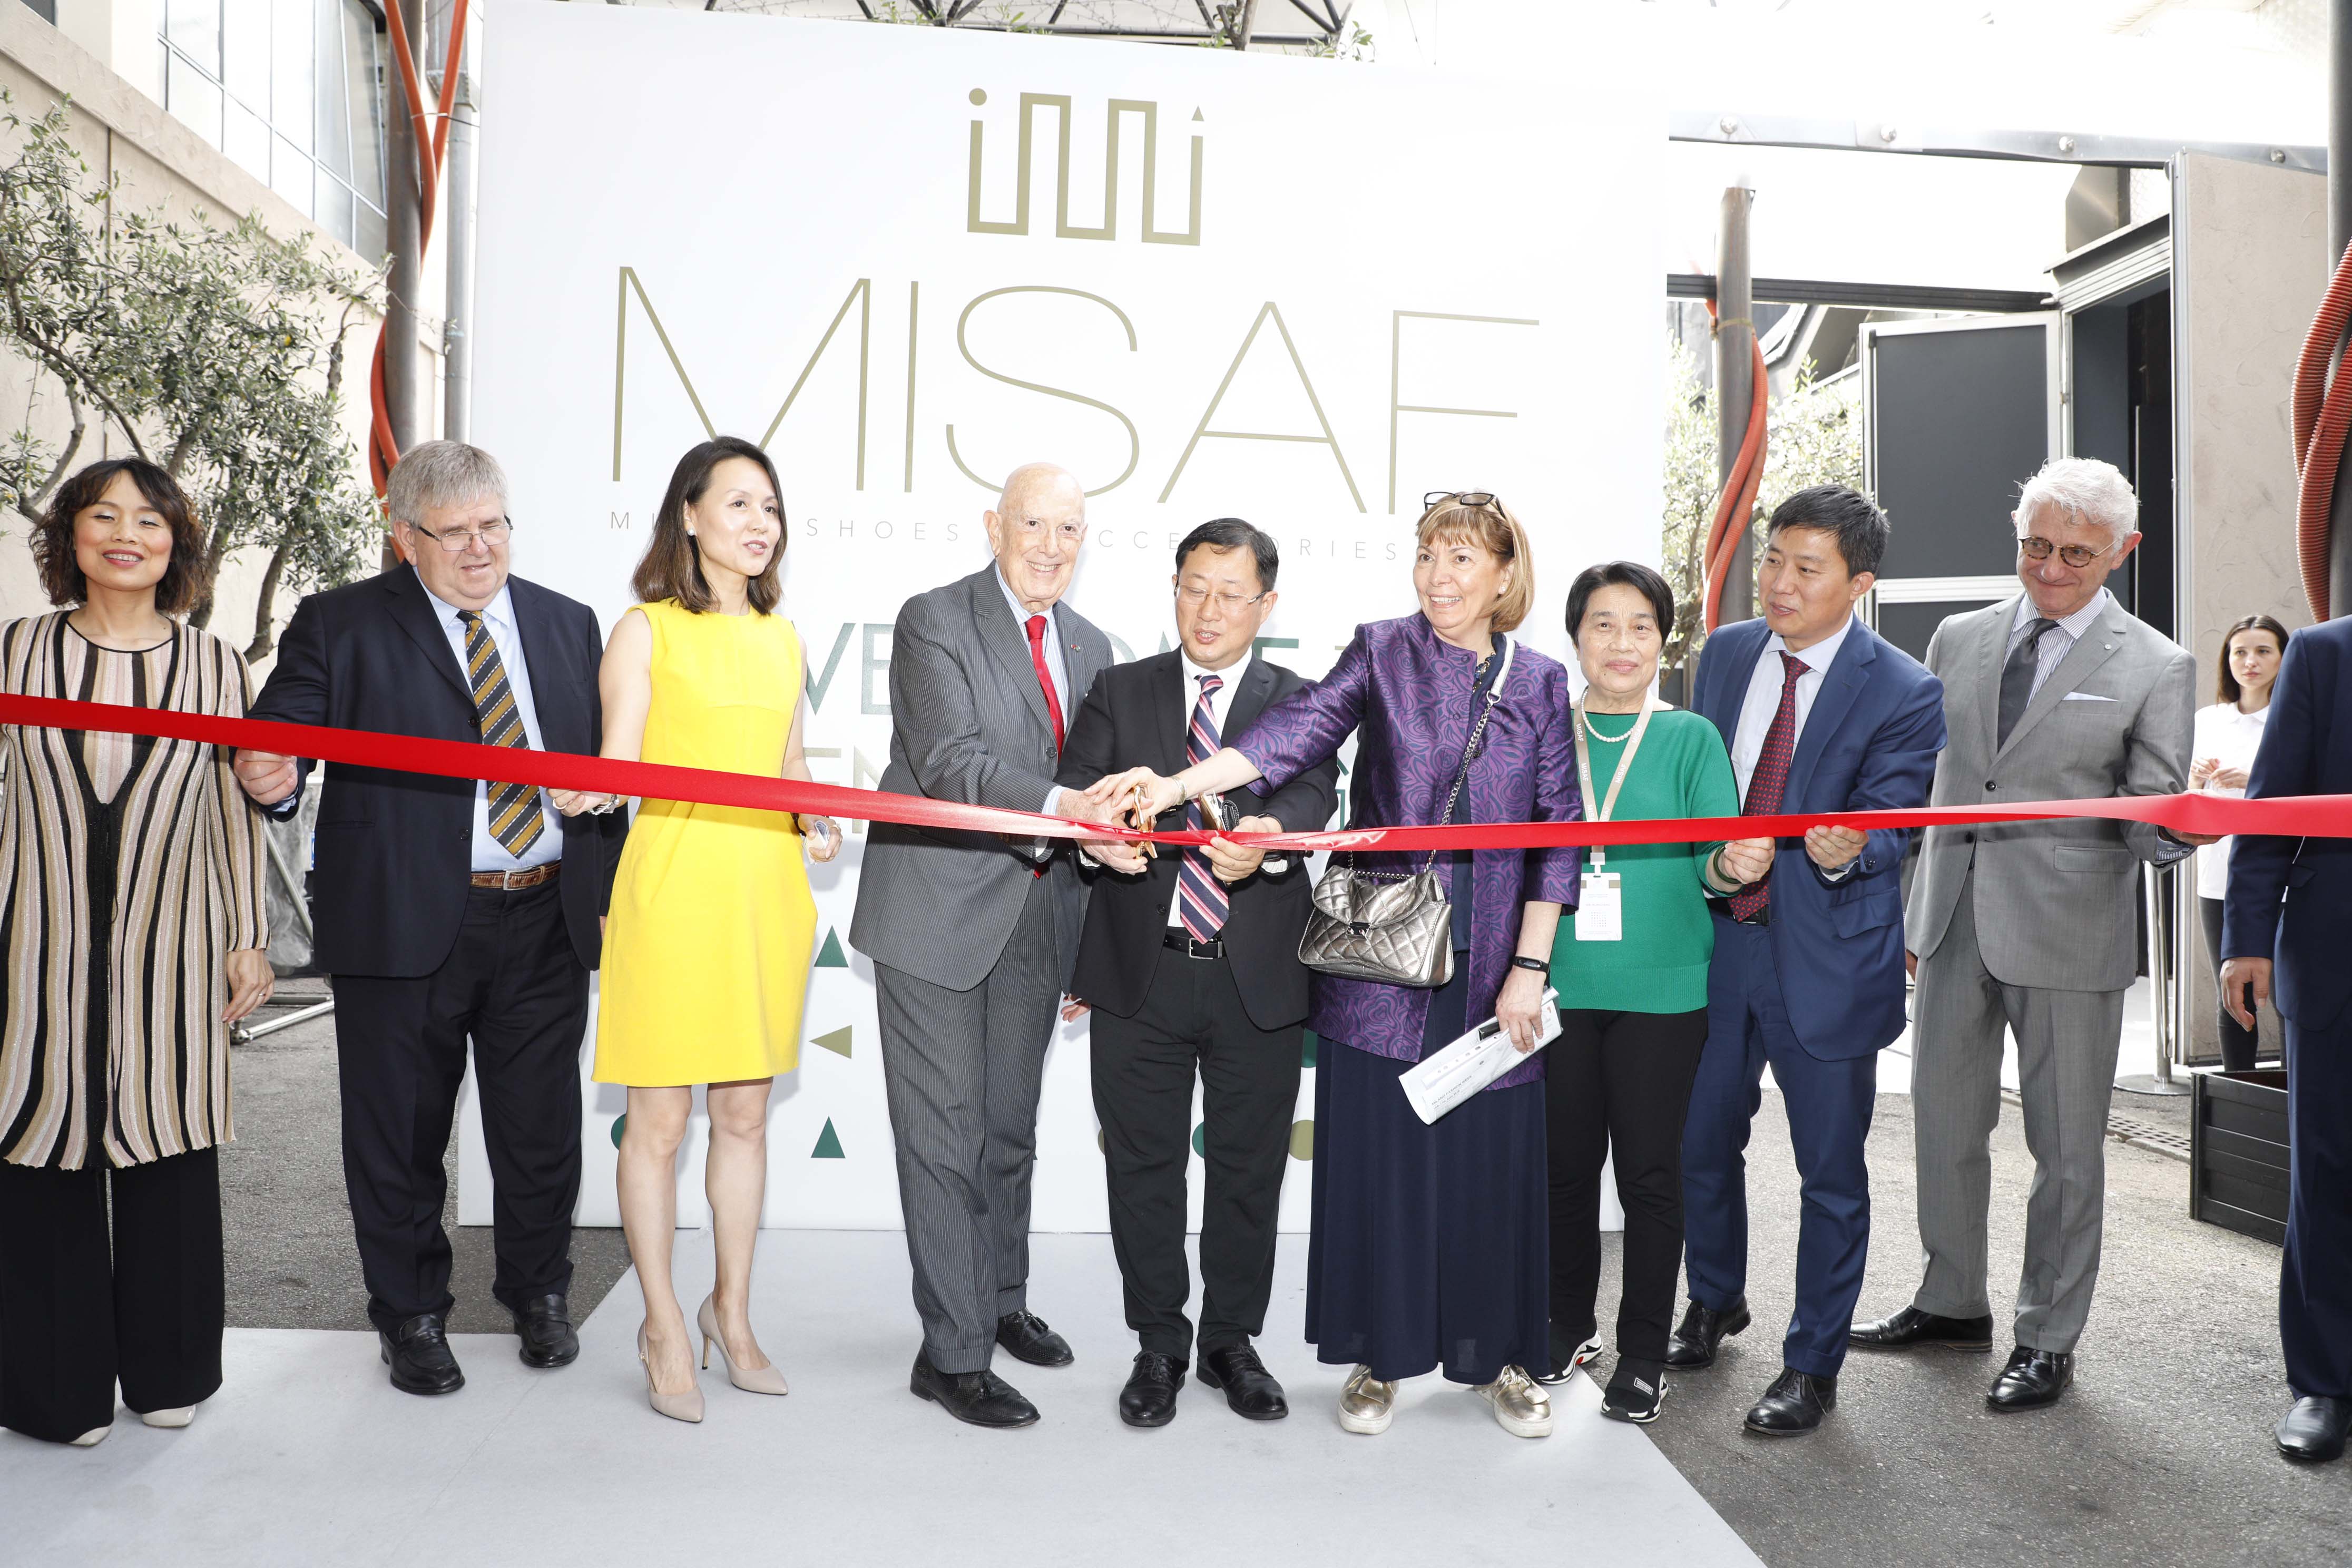 MISAF Opening: Yin Xiaomei, Giuseppe Orsetti, Ying Wang, Mauro Boselli, Zhang-Jie, Patrizia Bisio, Xie-Rongfang, Li Shaofeng